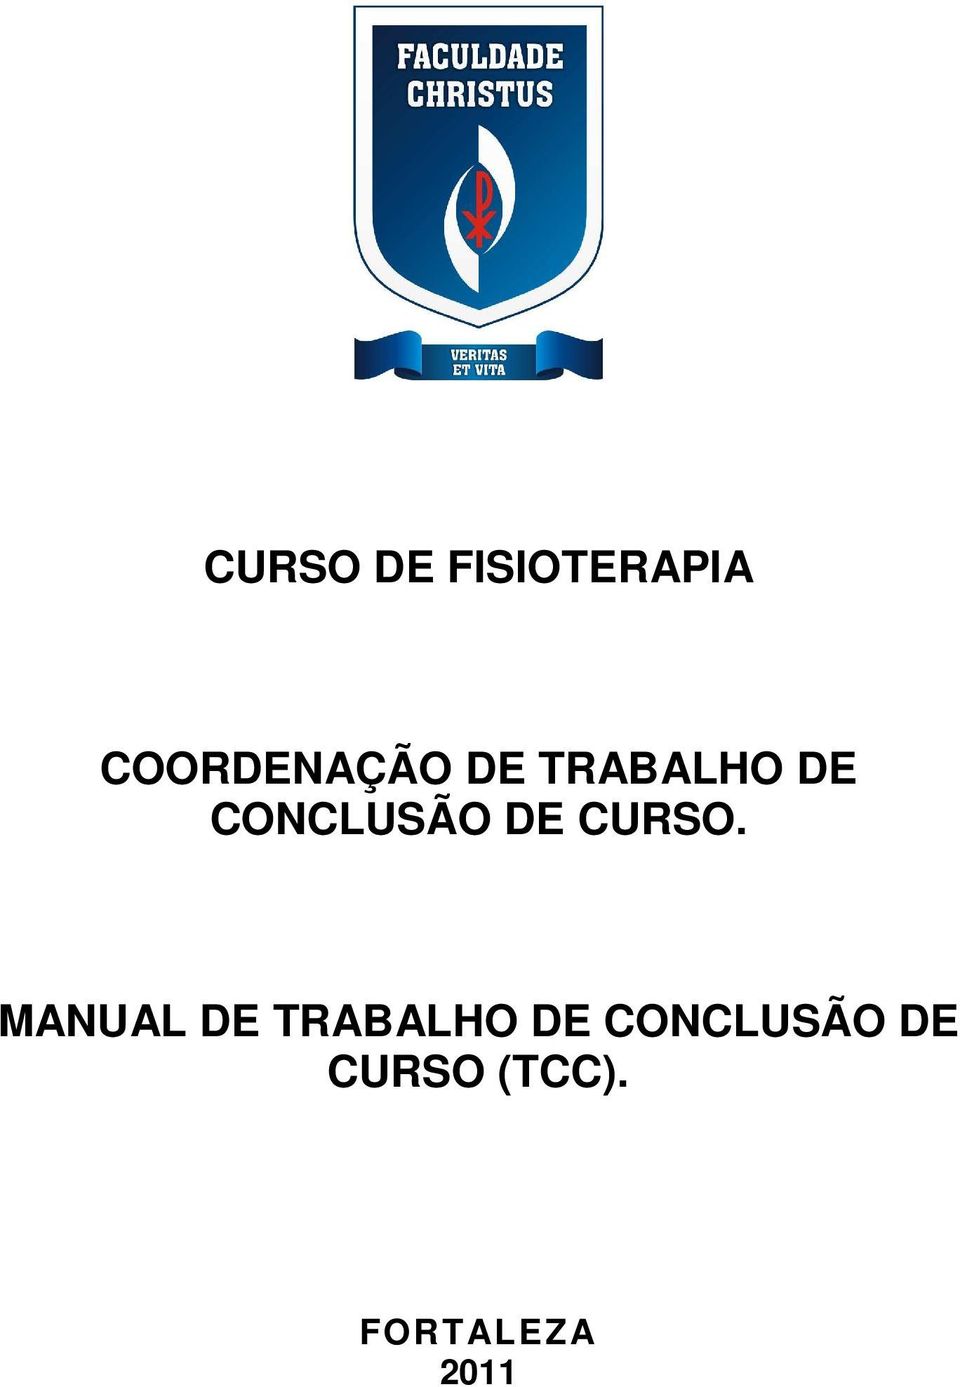 CONCLUSÃO DE CURSO.